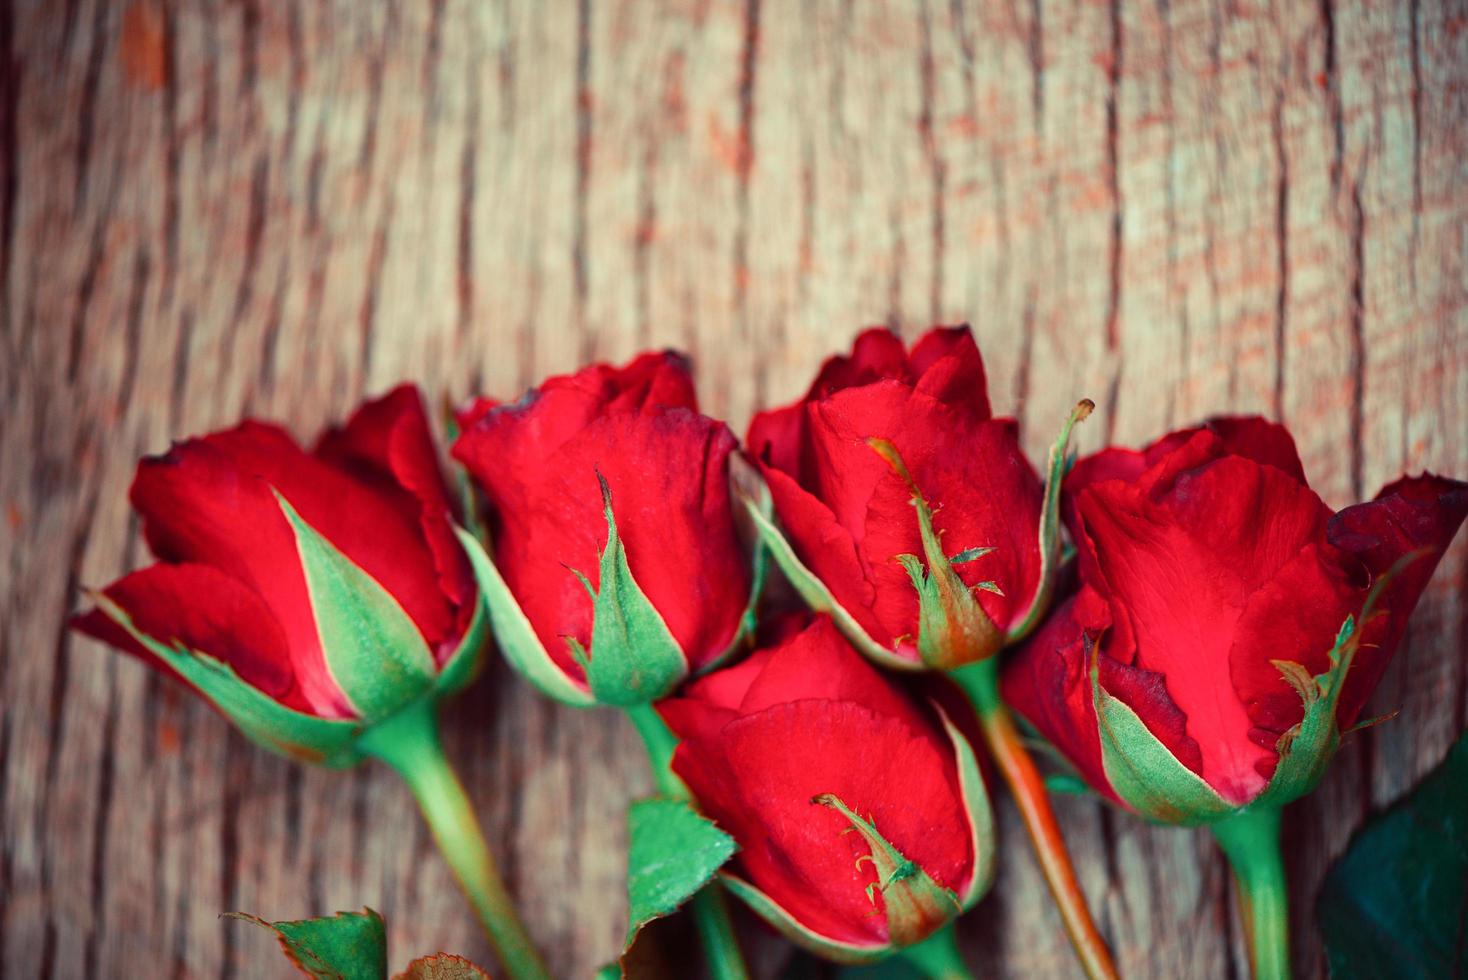 Rote Rosen Blumenstrauß auf rustikalem Holzhintergrund - Blumen Rosenblätter romantisches Liebes-Valentinstag-Konzept foto